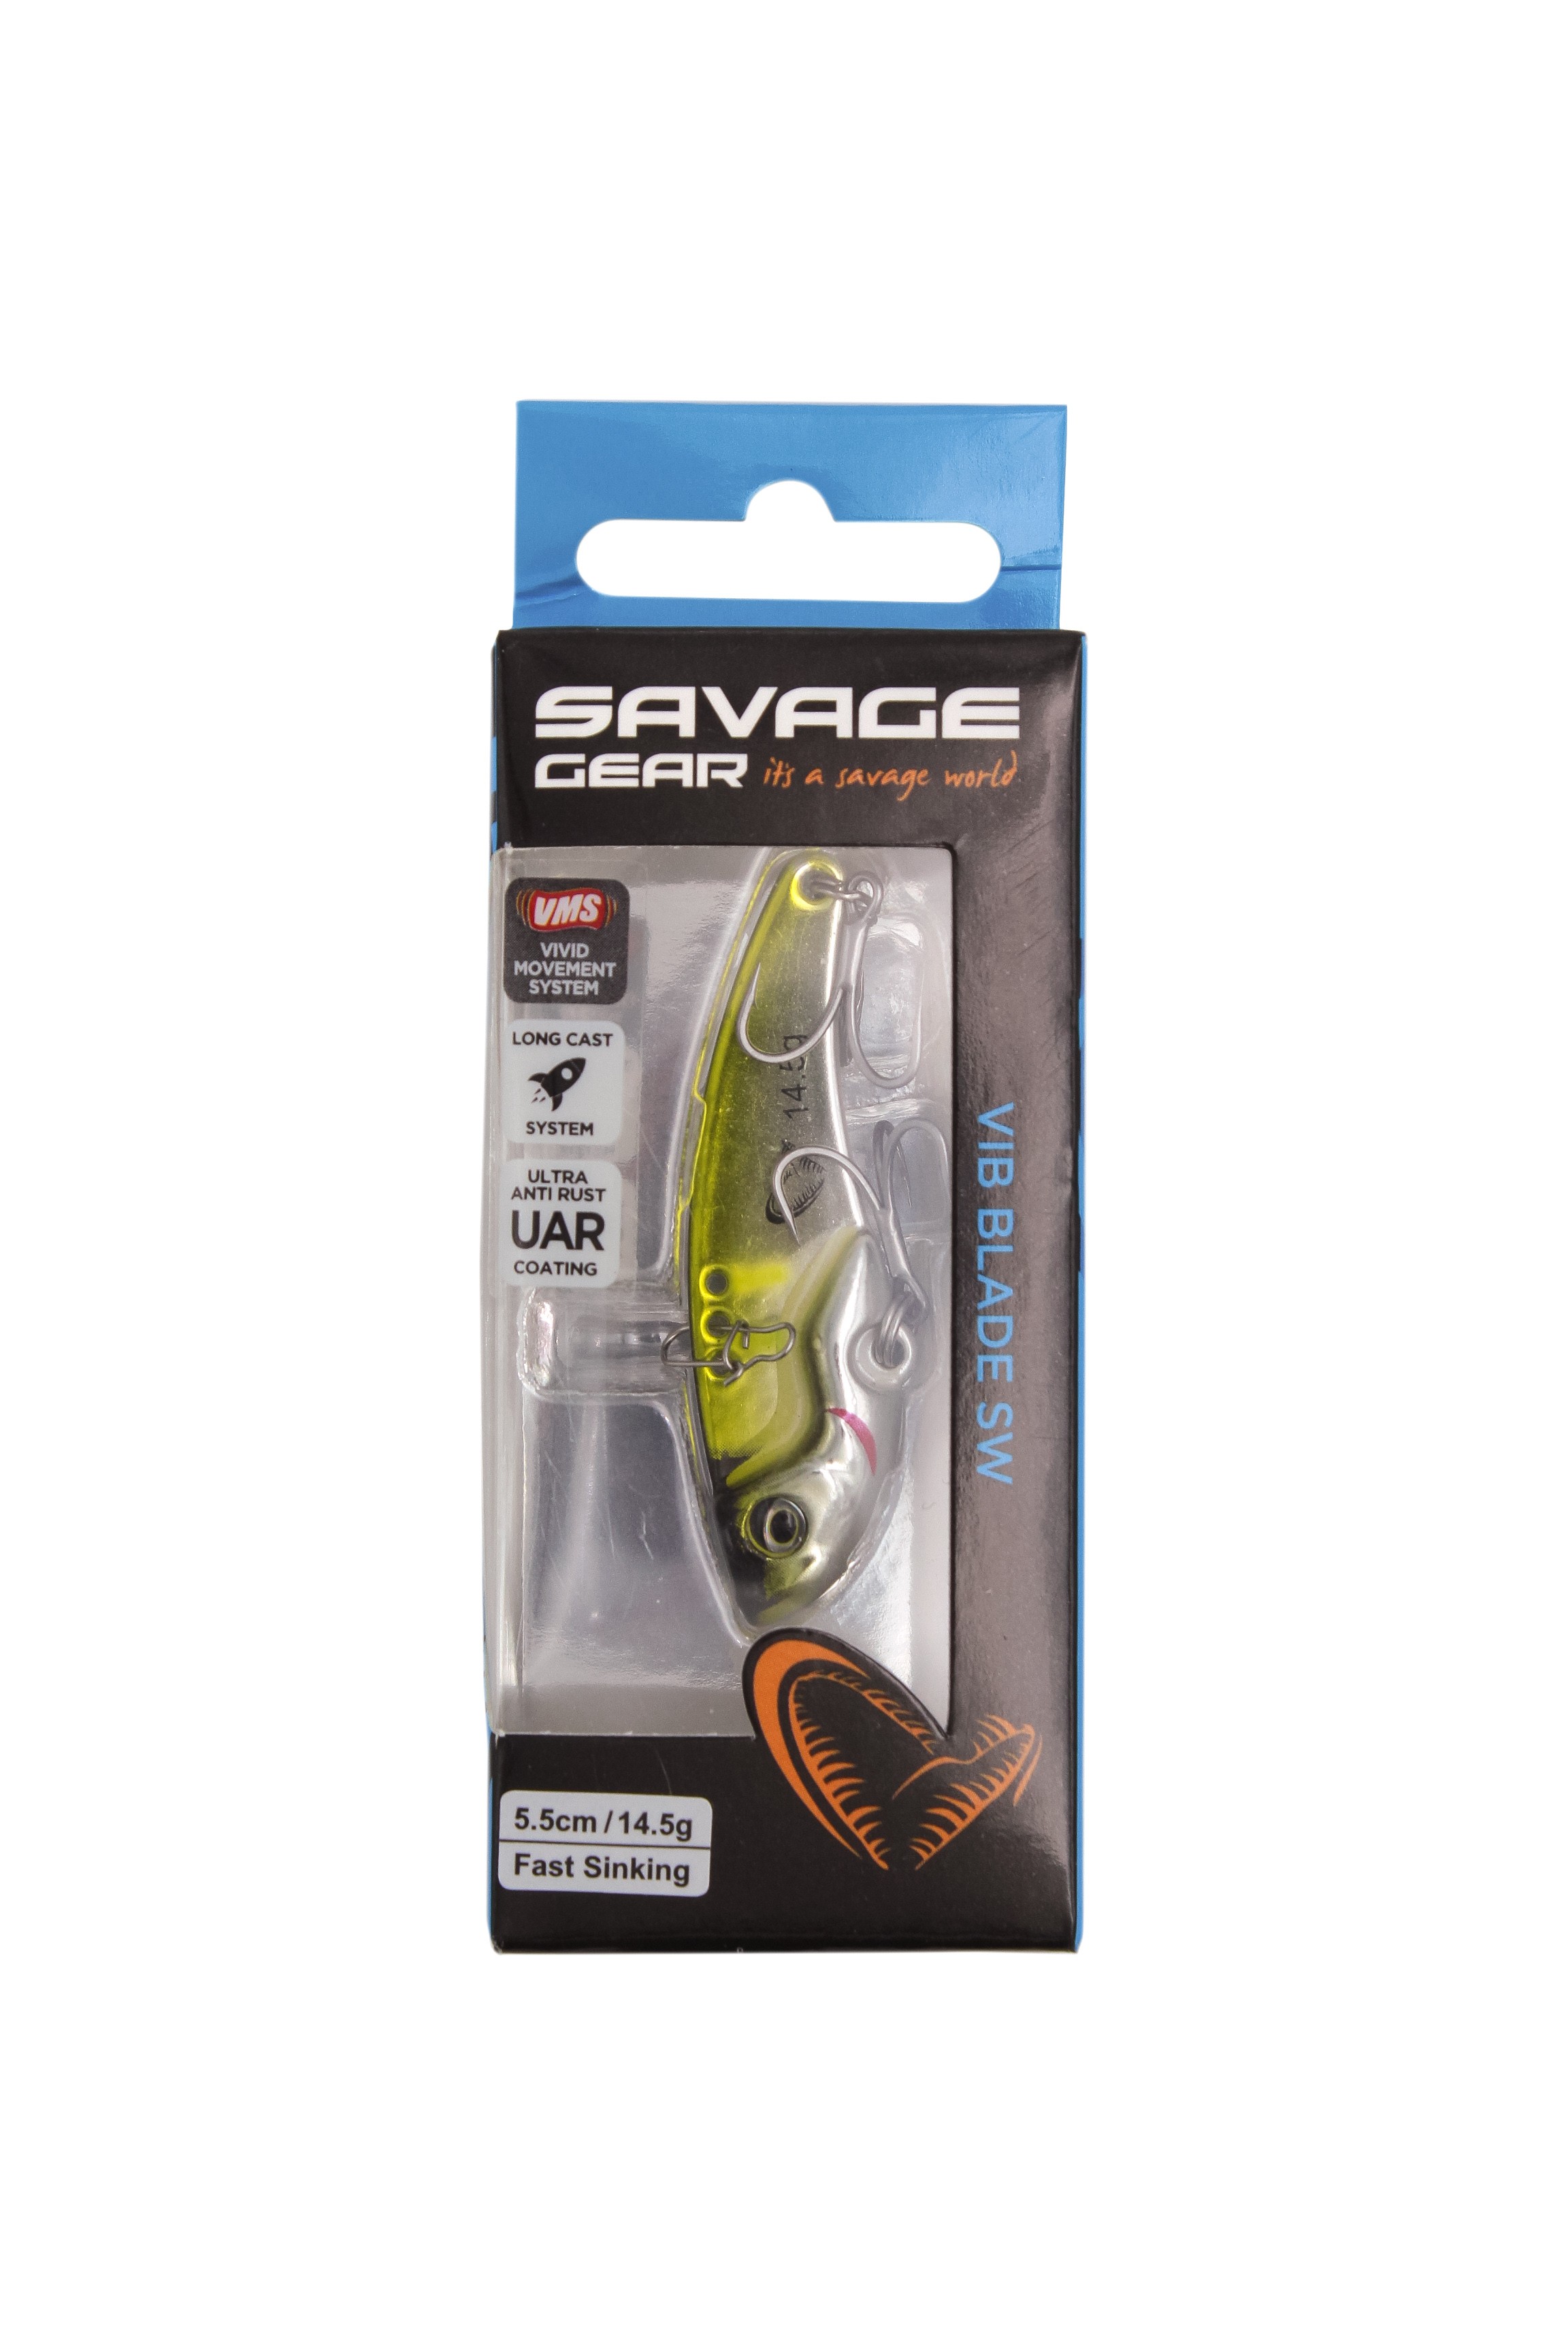 Блесна Savage Gear Vib blade SW 5,5см 14,5гр fast sinking mirror ayu - фото 1